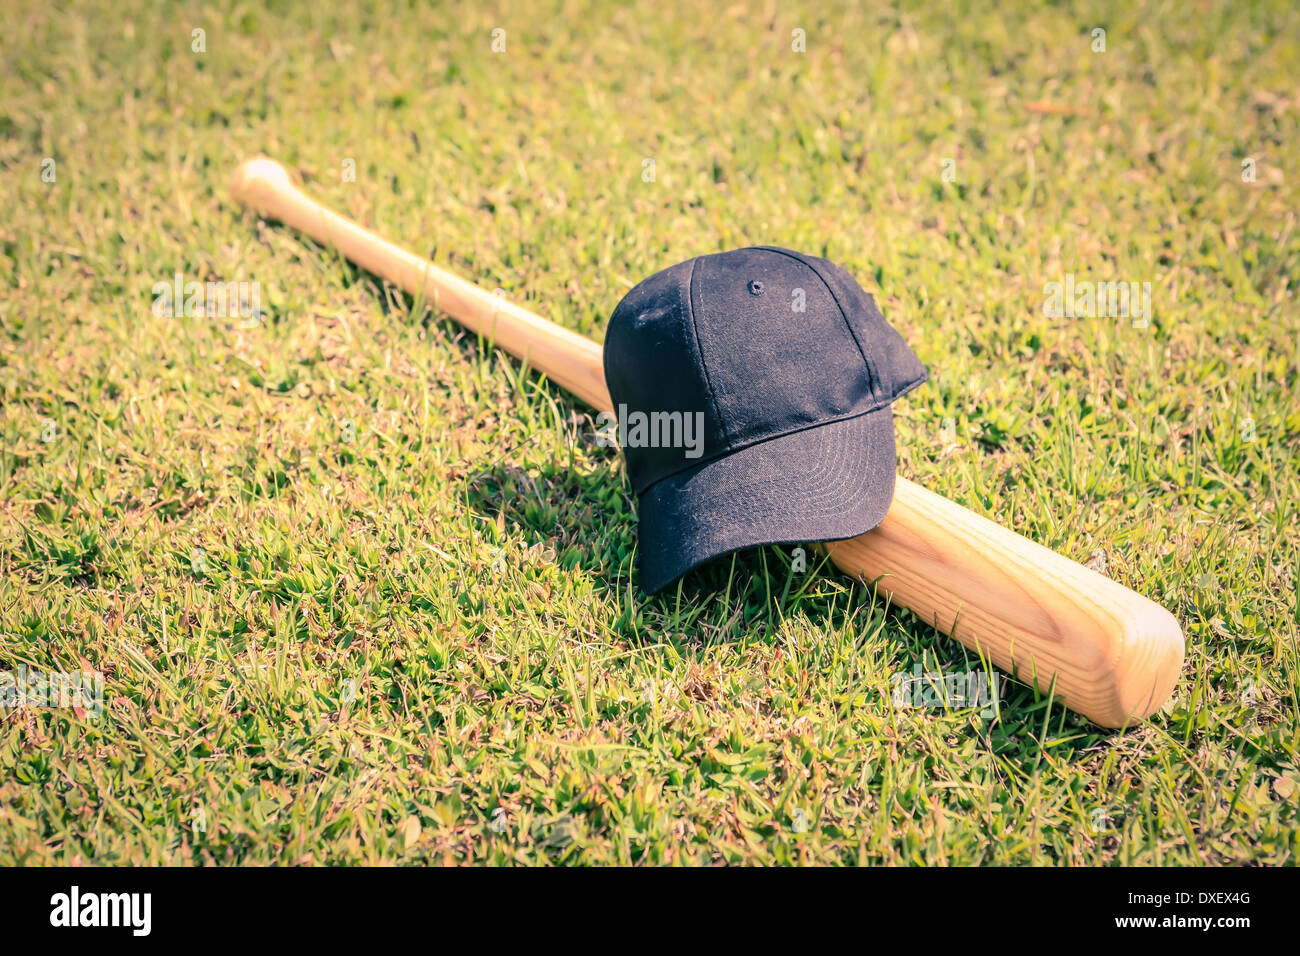 Konzept-Foto von einem Baseball-Schläger und schwarzen Hut Stockfoto